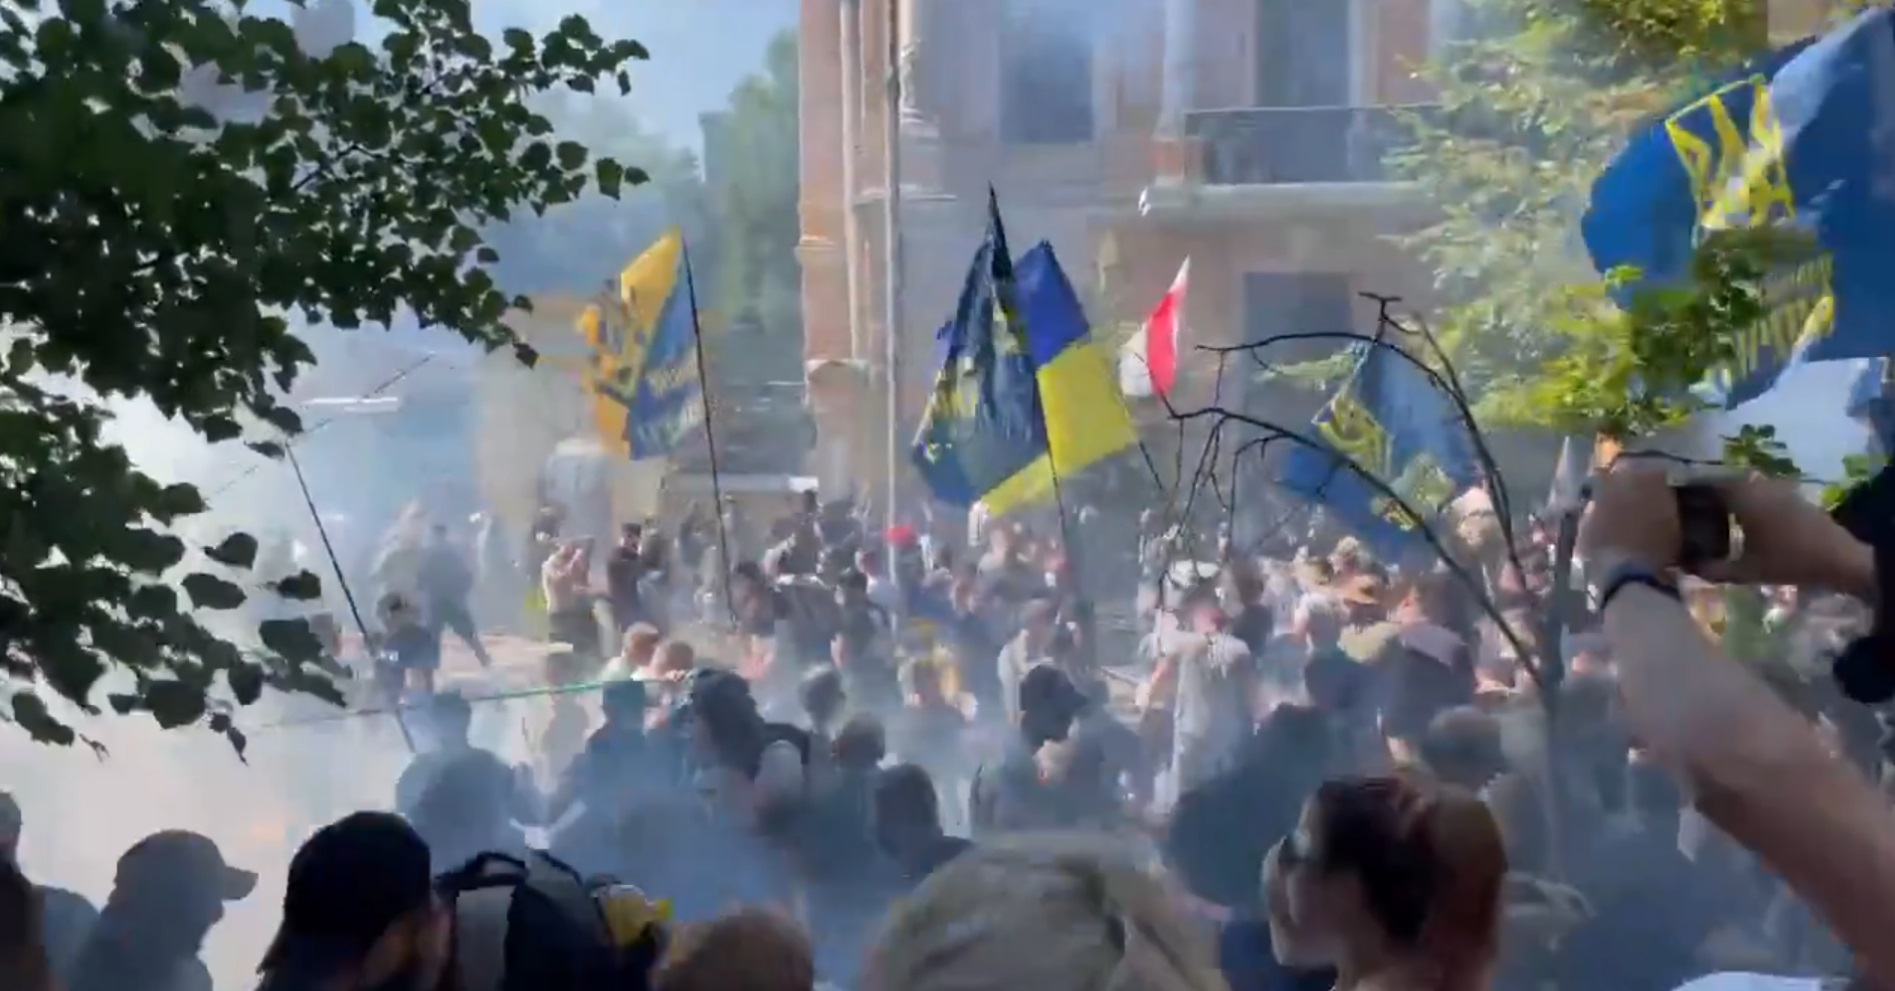 Нацкорпус влаштував мітинг у центрі Києва, сталися сутички, є постраждалі (оновлено)